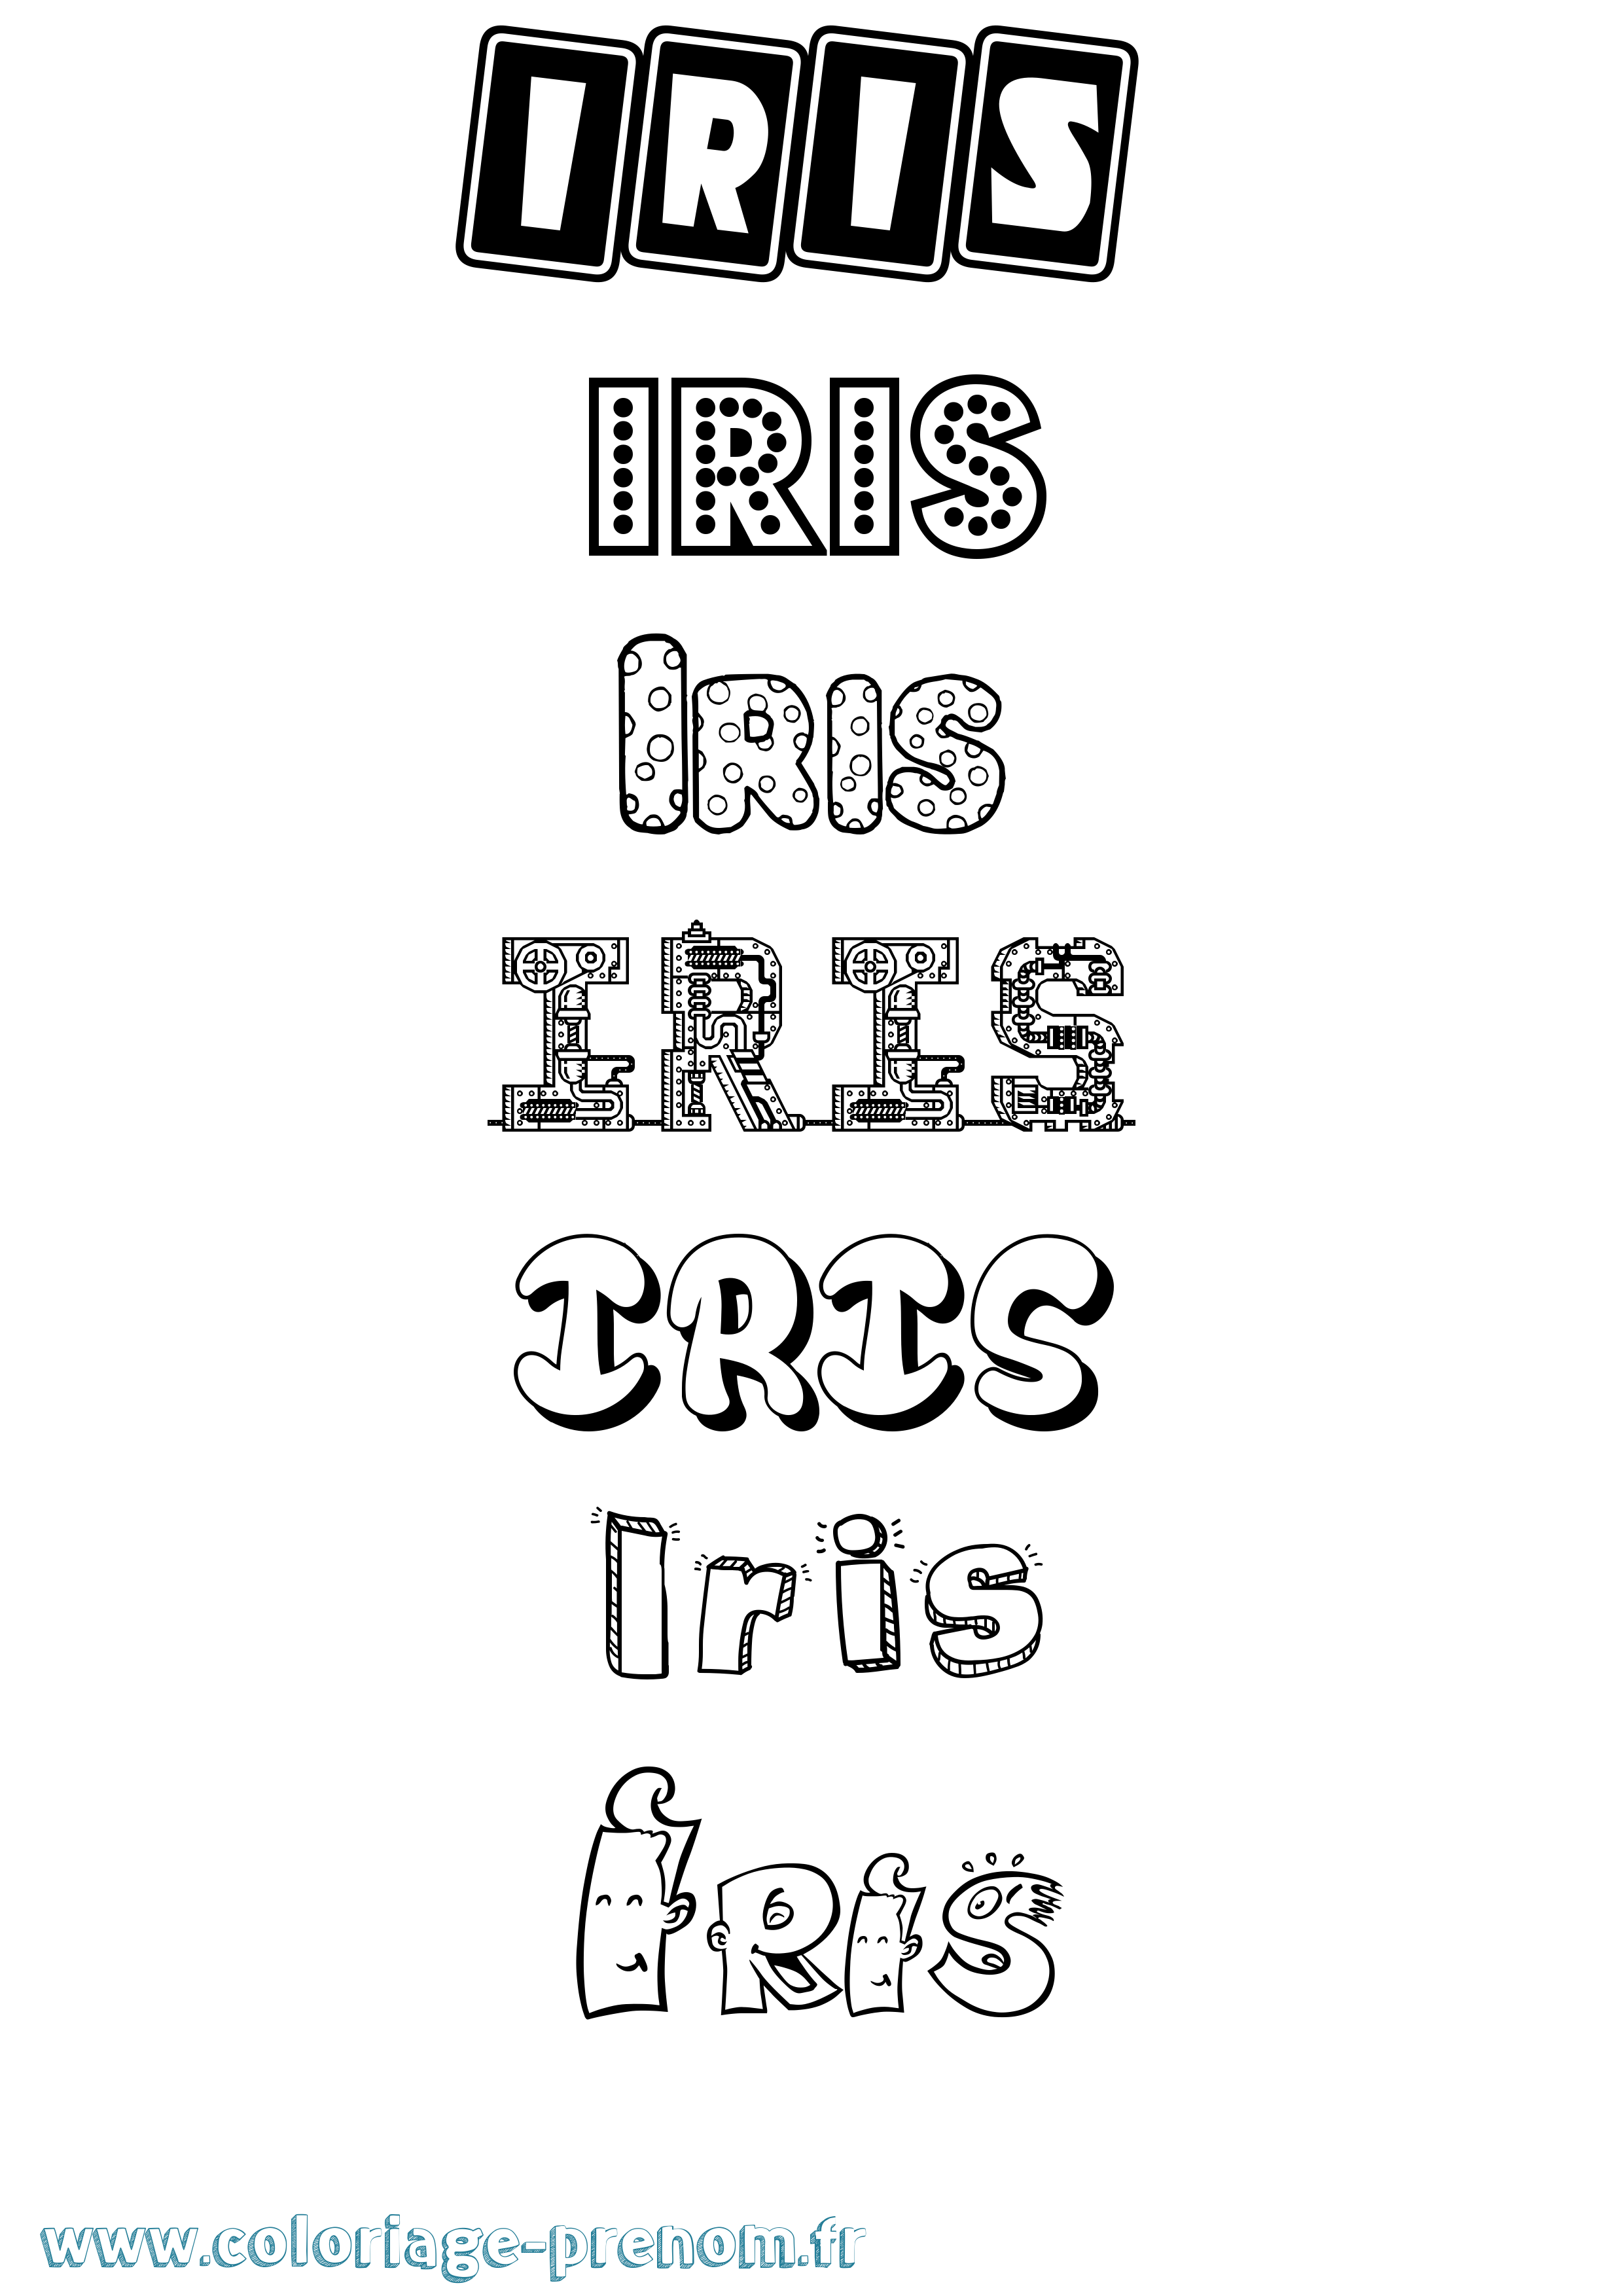 Coloriage prénom Iris Fun